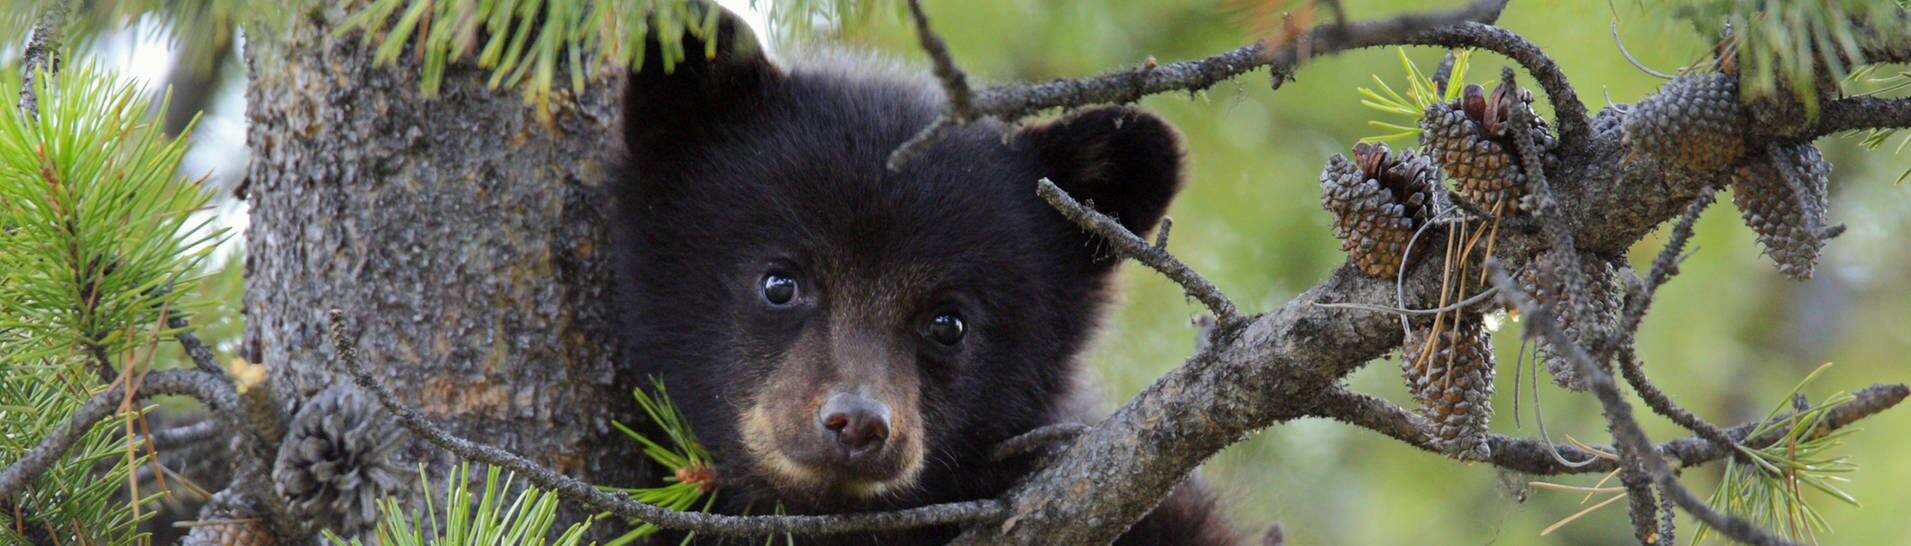 Bären in Kaliforniene begehen Einbrüche:  Ein Schwarzbär-Baby hängt im Baum (Symbolfoto) (Foto: IMAGO, IMAGO / All Canada Photos)